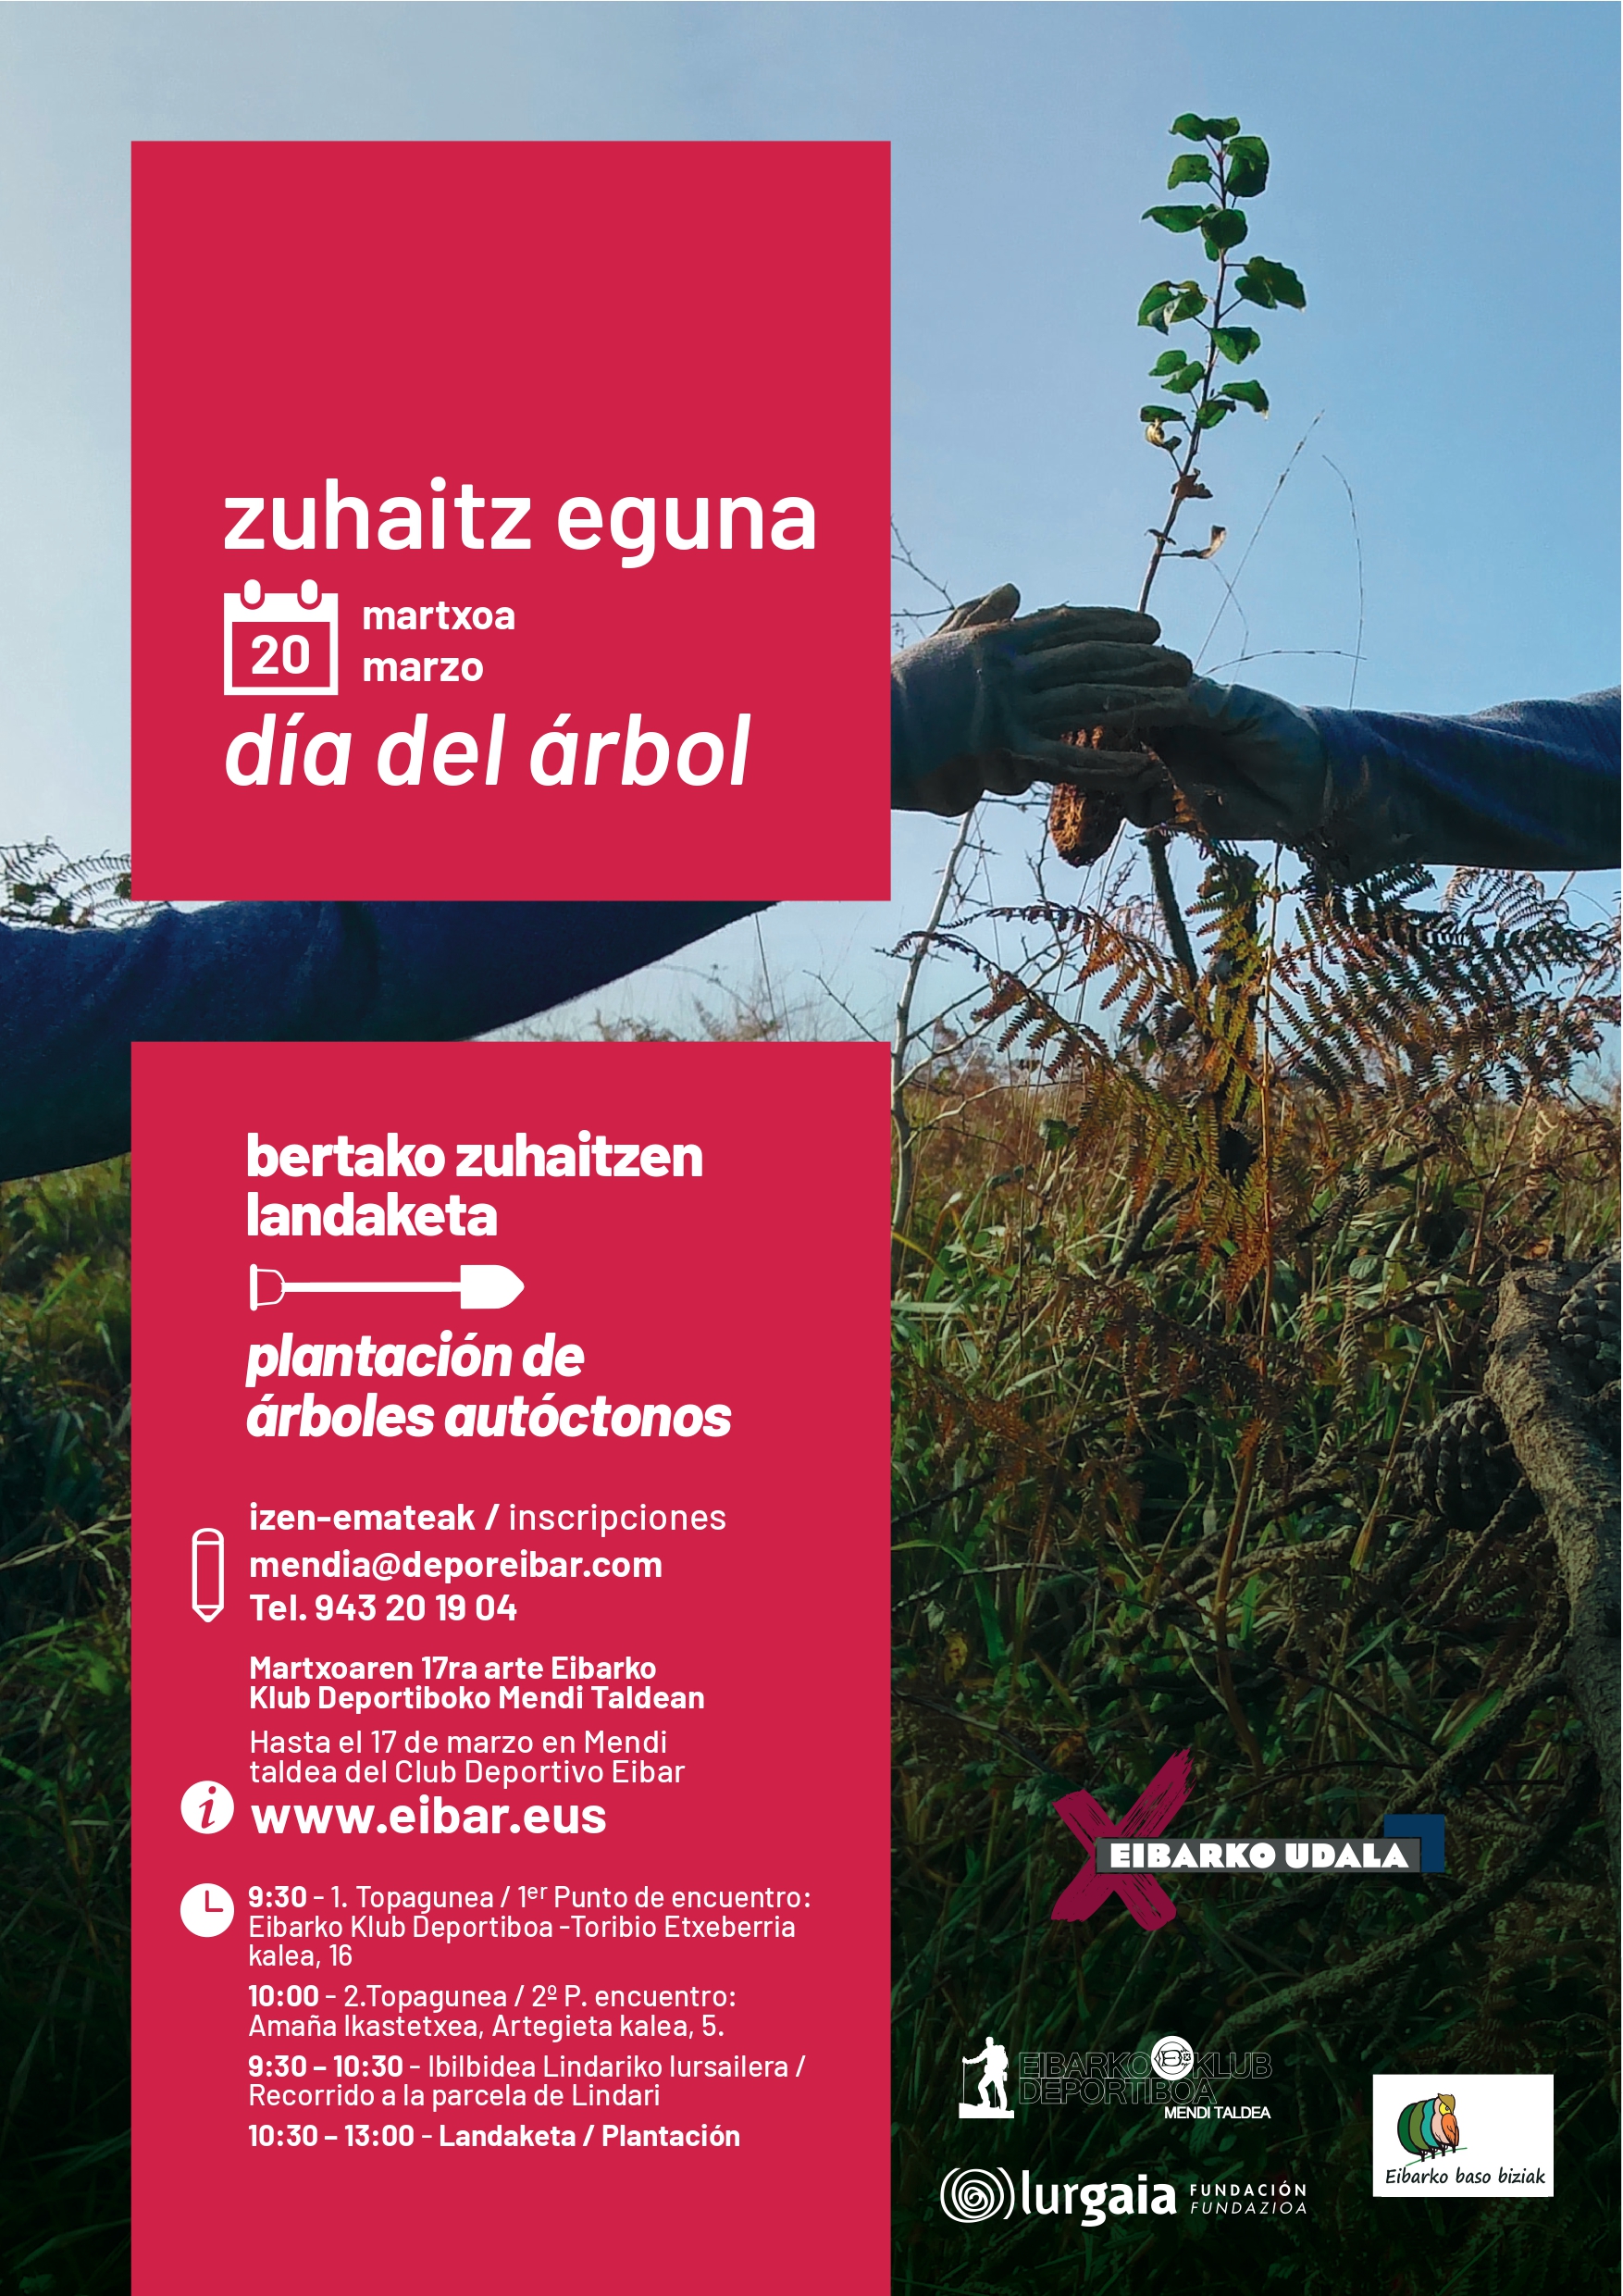 Eibar celebrará este año el Zuhaitz Eguna en dos jornadas, los días 17 y 20 de marzo, con la plantación de 500 árboles autóctonos